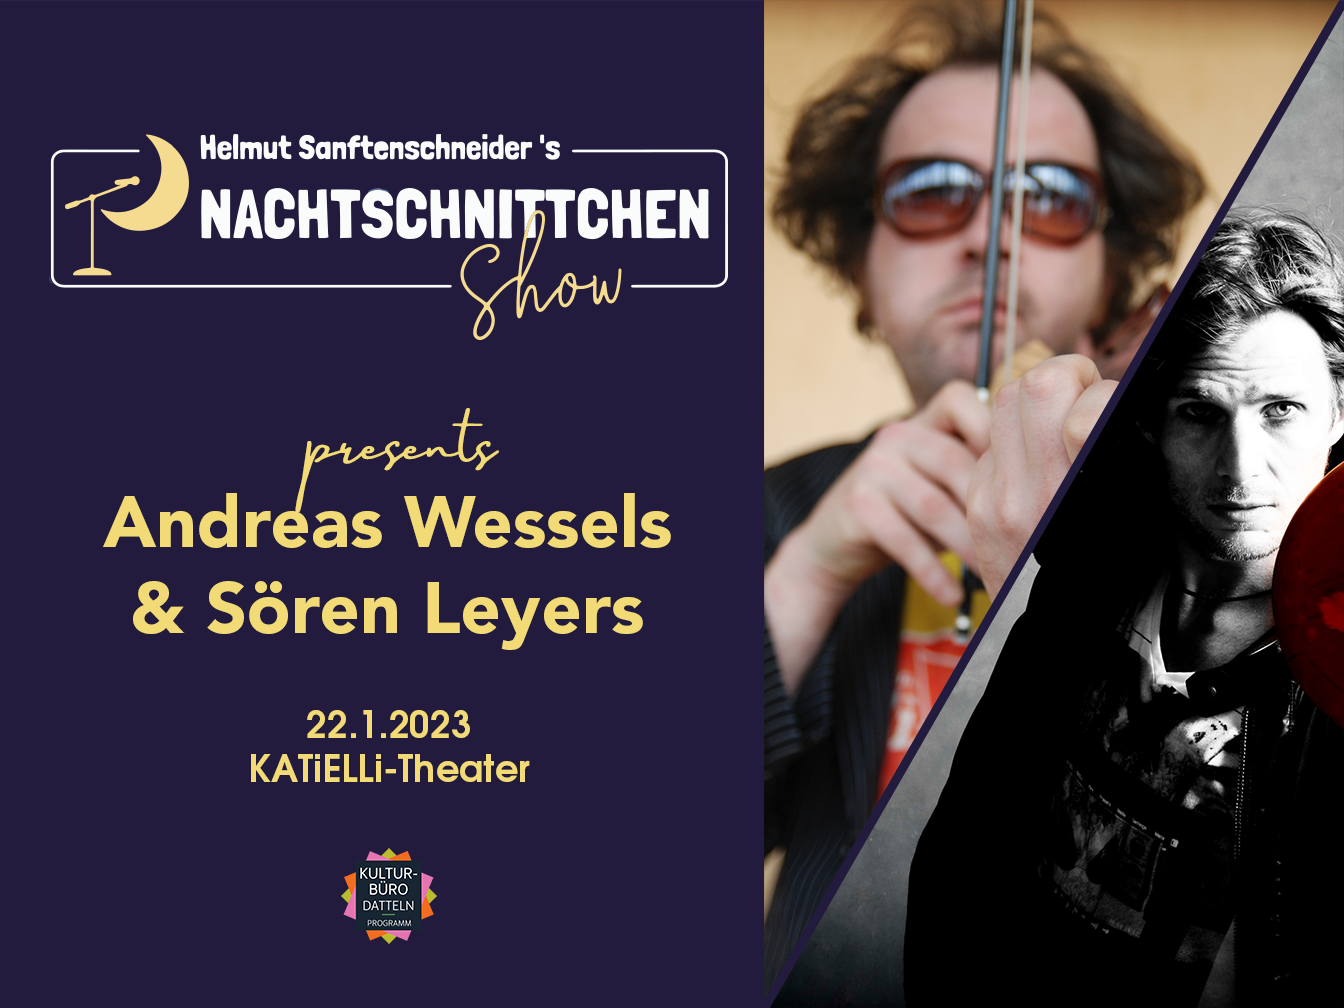 Andreas Wessels & Sören Leyers. Ansonsten enthält das Bild Infos zur Veranstaltung, die auch im Ankündigungstext zu finden sind.